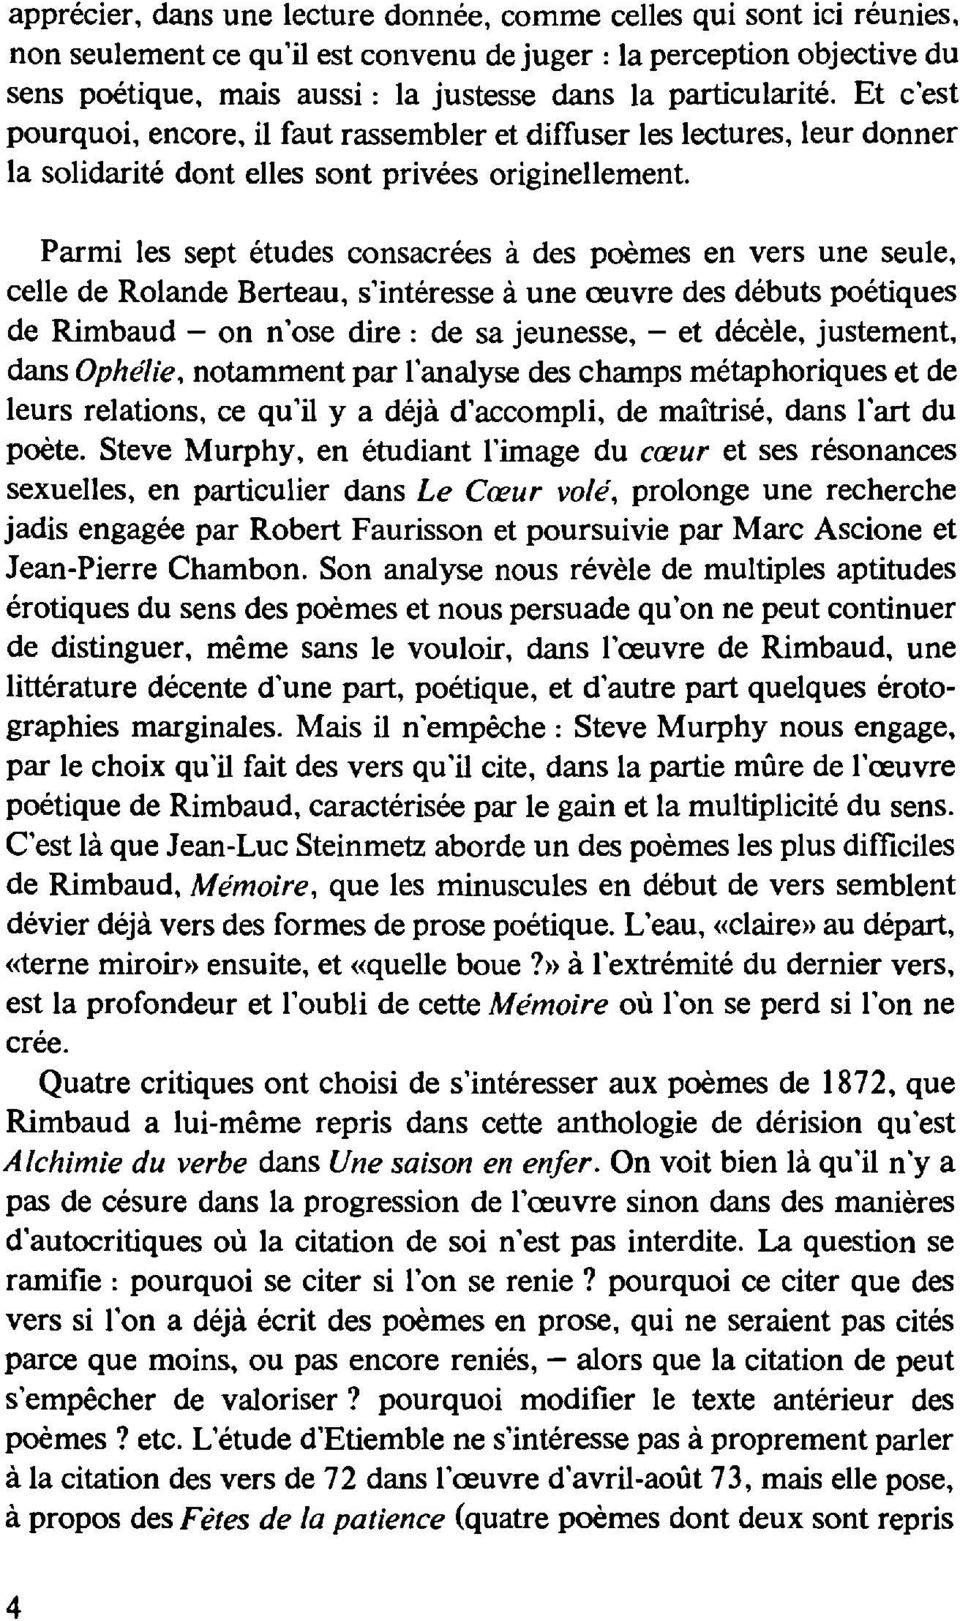 Parmi les sept études consacrées à des poèmes en vers une seule, celle de Rolande Berteau, s'intéresse à une œuvre des débuts poétiques de Rimbaud - on n'ose dire: de sa jeunesse, - et décèle,